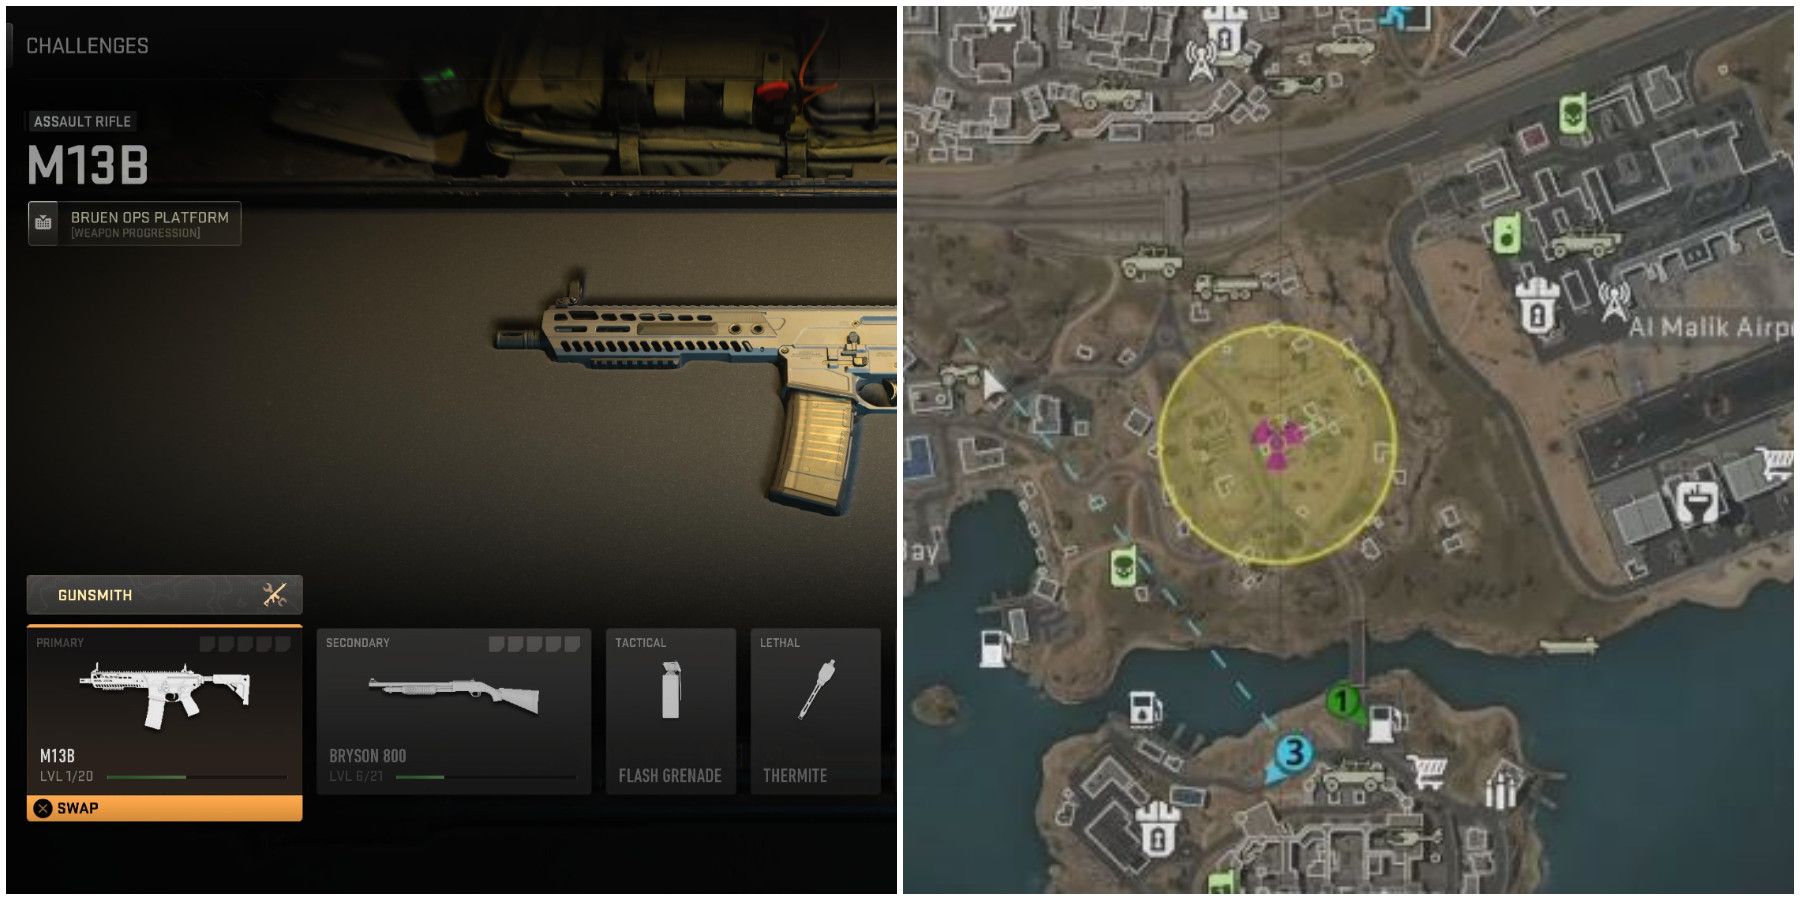 Call of Duty Modern Warfare 2: How to Unlock M13B Assault Rifle